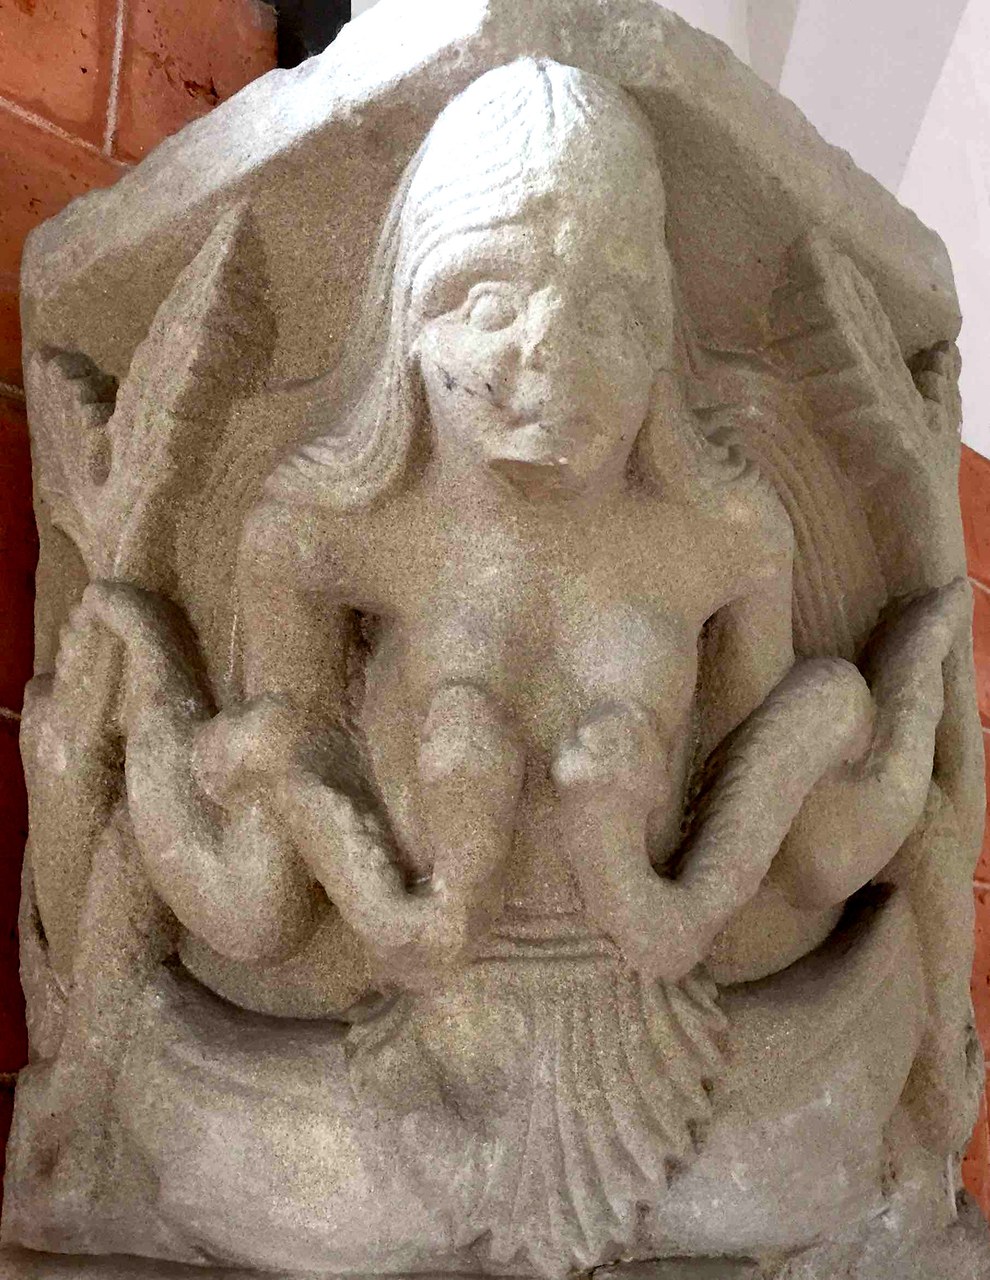 fig. 7 Pavia, Museo civico, capitello da San Giovanni in Borgo, la sirena-Lussuria, secolo XII
